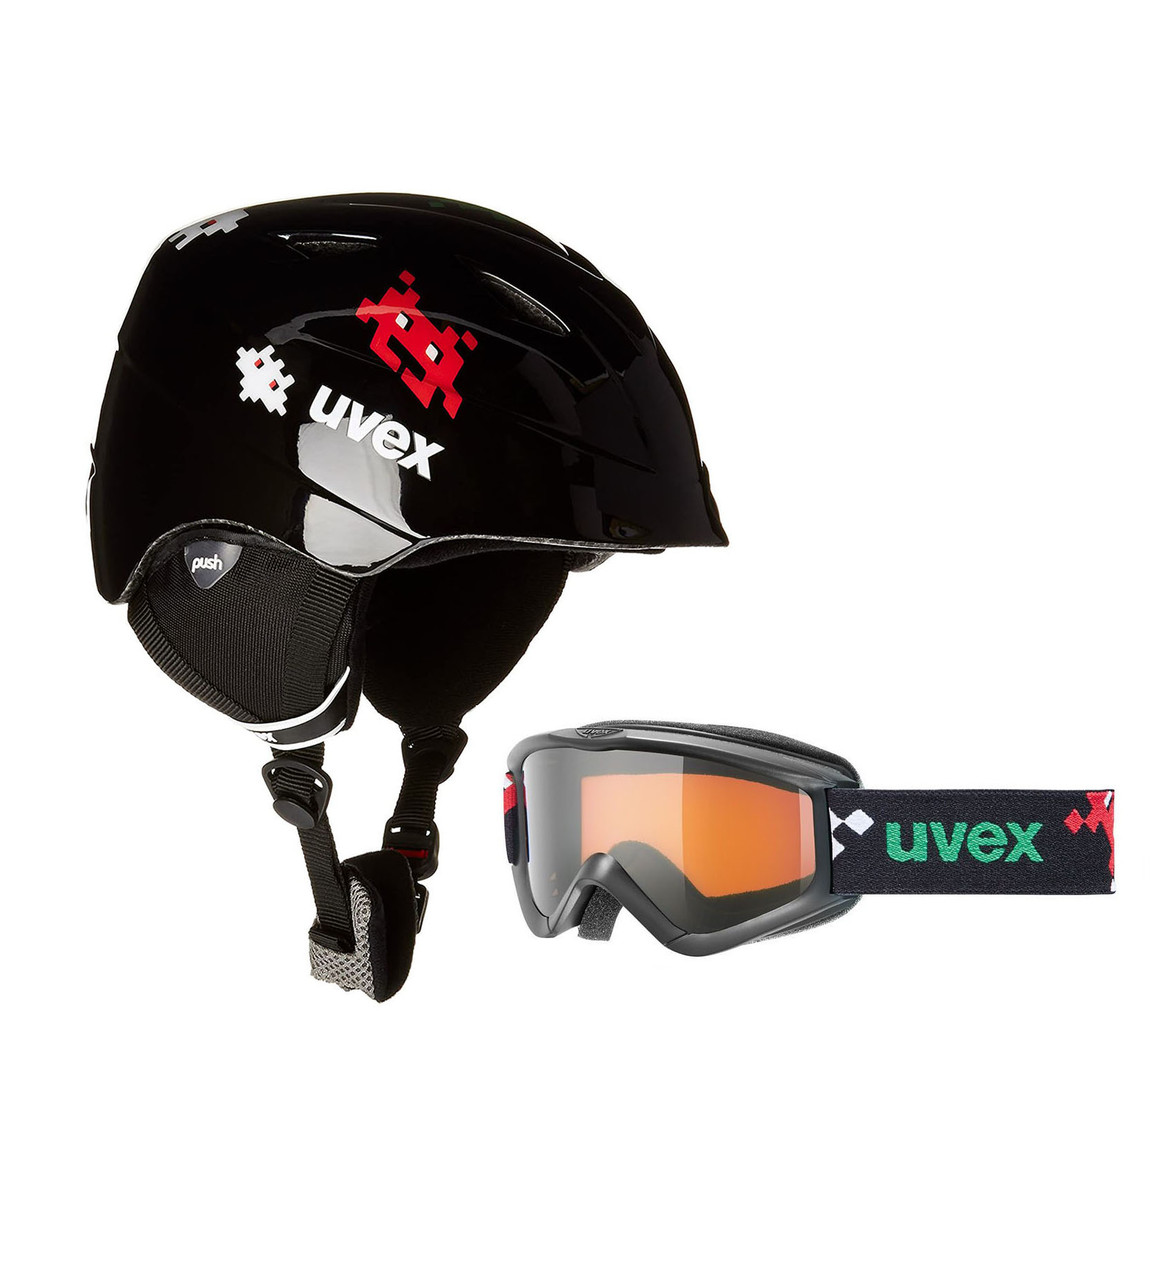 Комплект шлем горнолыжный детский + маска Uvex Airwing II SET (48-52) для ребенка 3-4 года Черный (S56S1121401-blk)